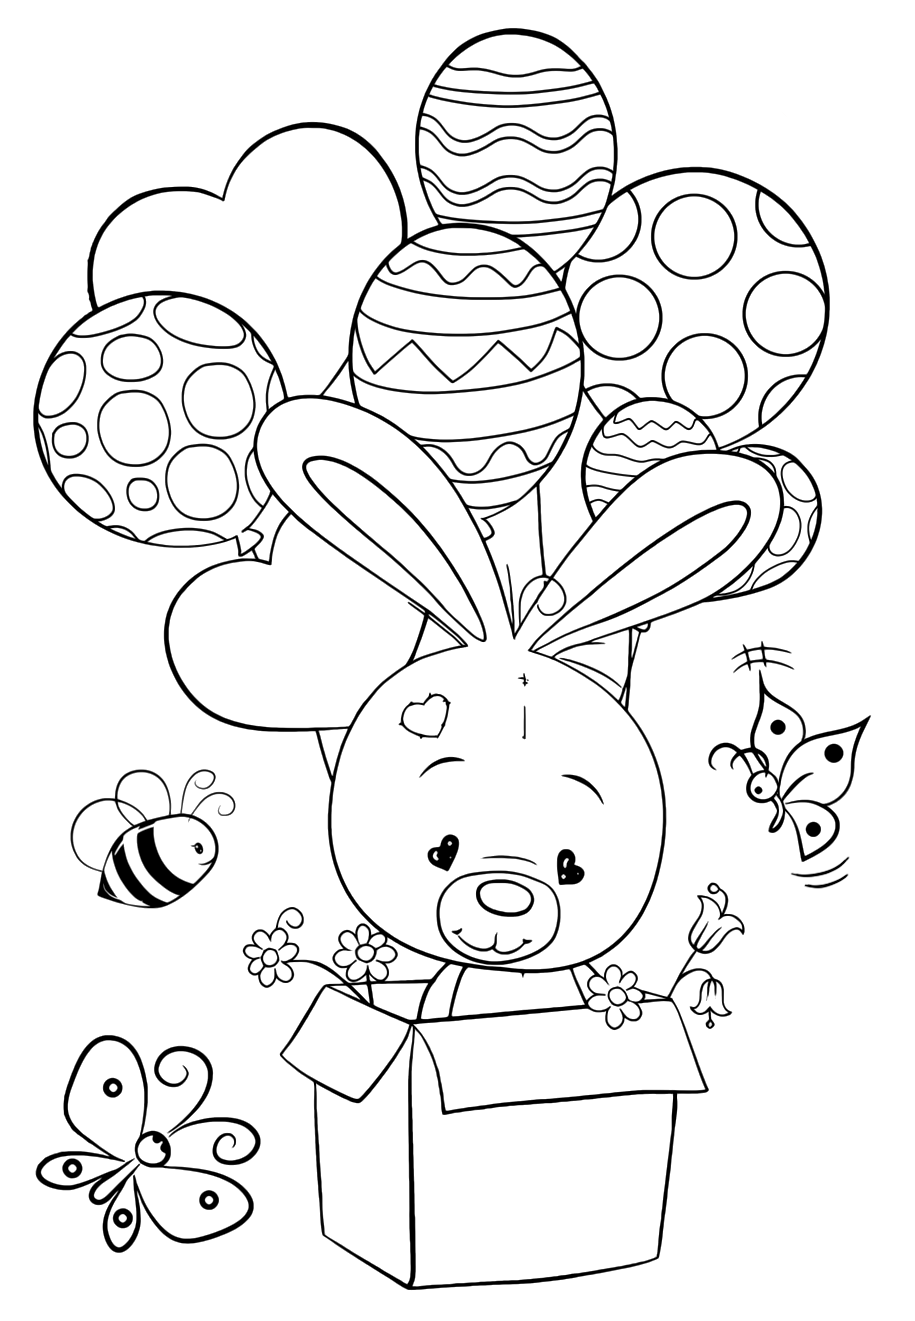 Раскраска для девочек «Милашки» Зайчик с воздушными шарами, чтобы распечатать